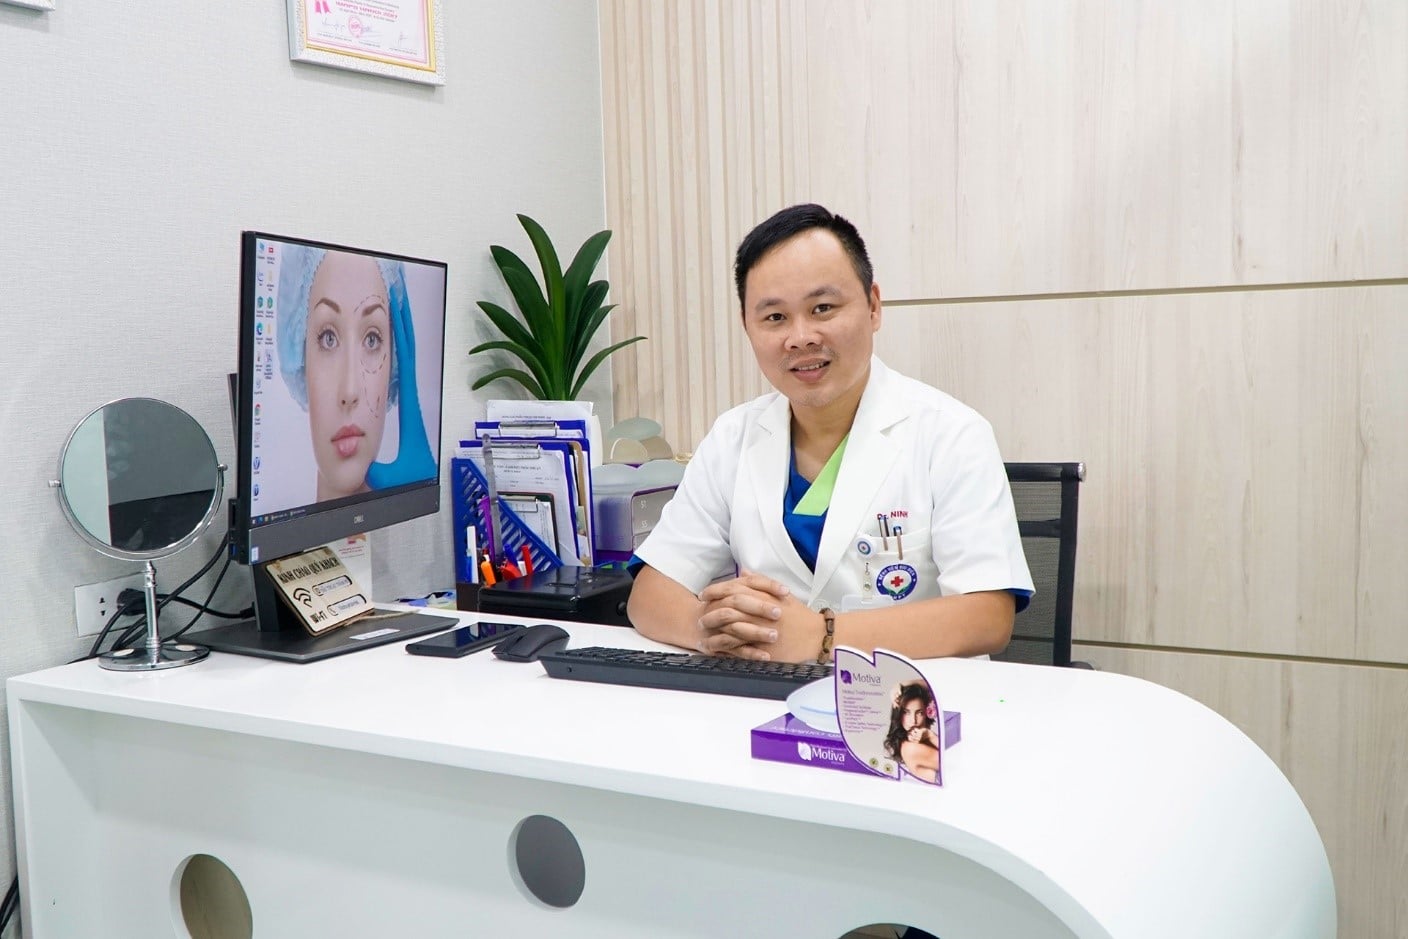 Cùng với ekip của mình, bác sĩ Ninh luôn sát sao trong toàn bộ quy trình phẫu thuật, chăm sóc hậu phẫu, trực tiếp theo dõi và thăm khám thường xuyên để có điều chỉnh gì về chế độ chăm sóc phù hợp nhất